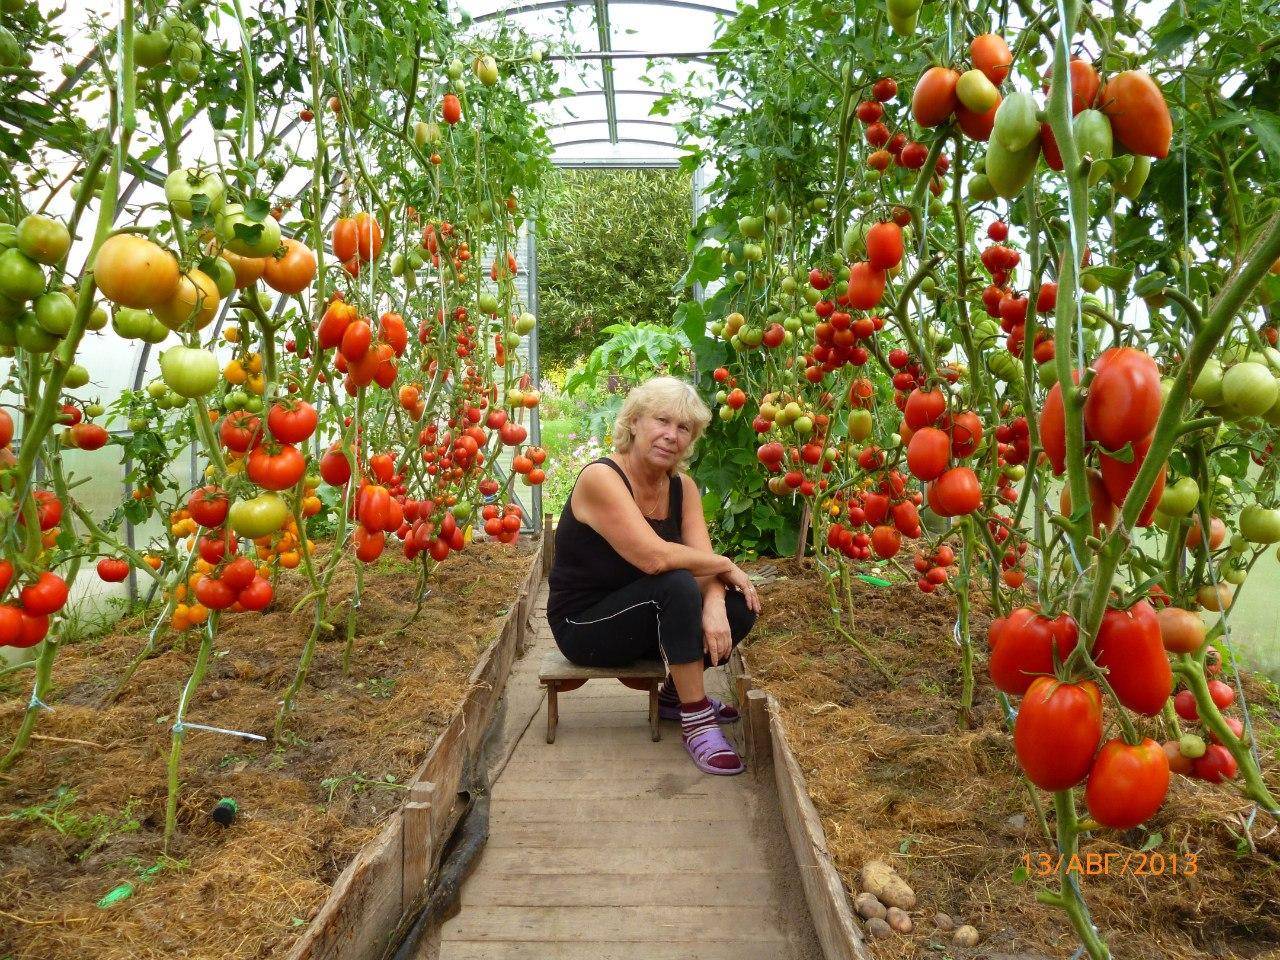 Выращивание помидоров в теплице из поликарбоната: агротехника, секреты